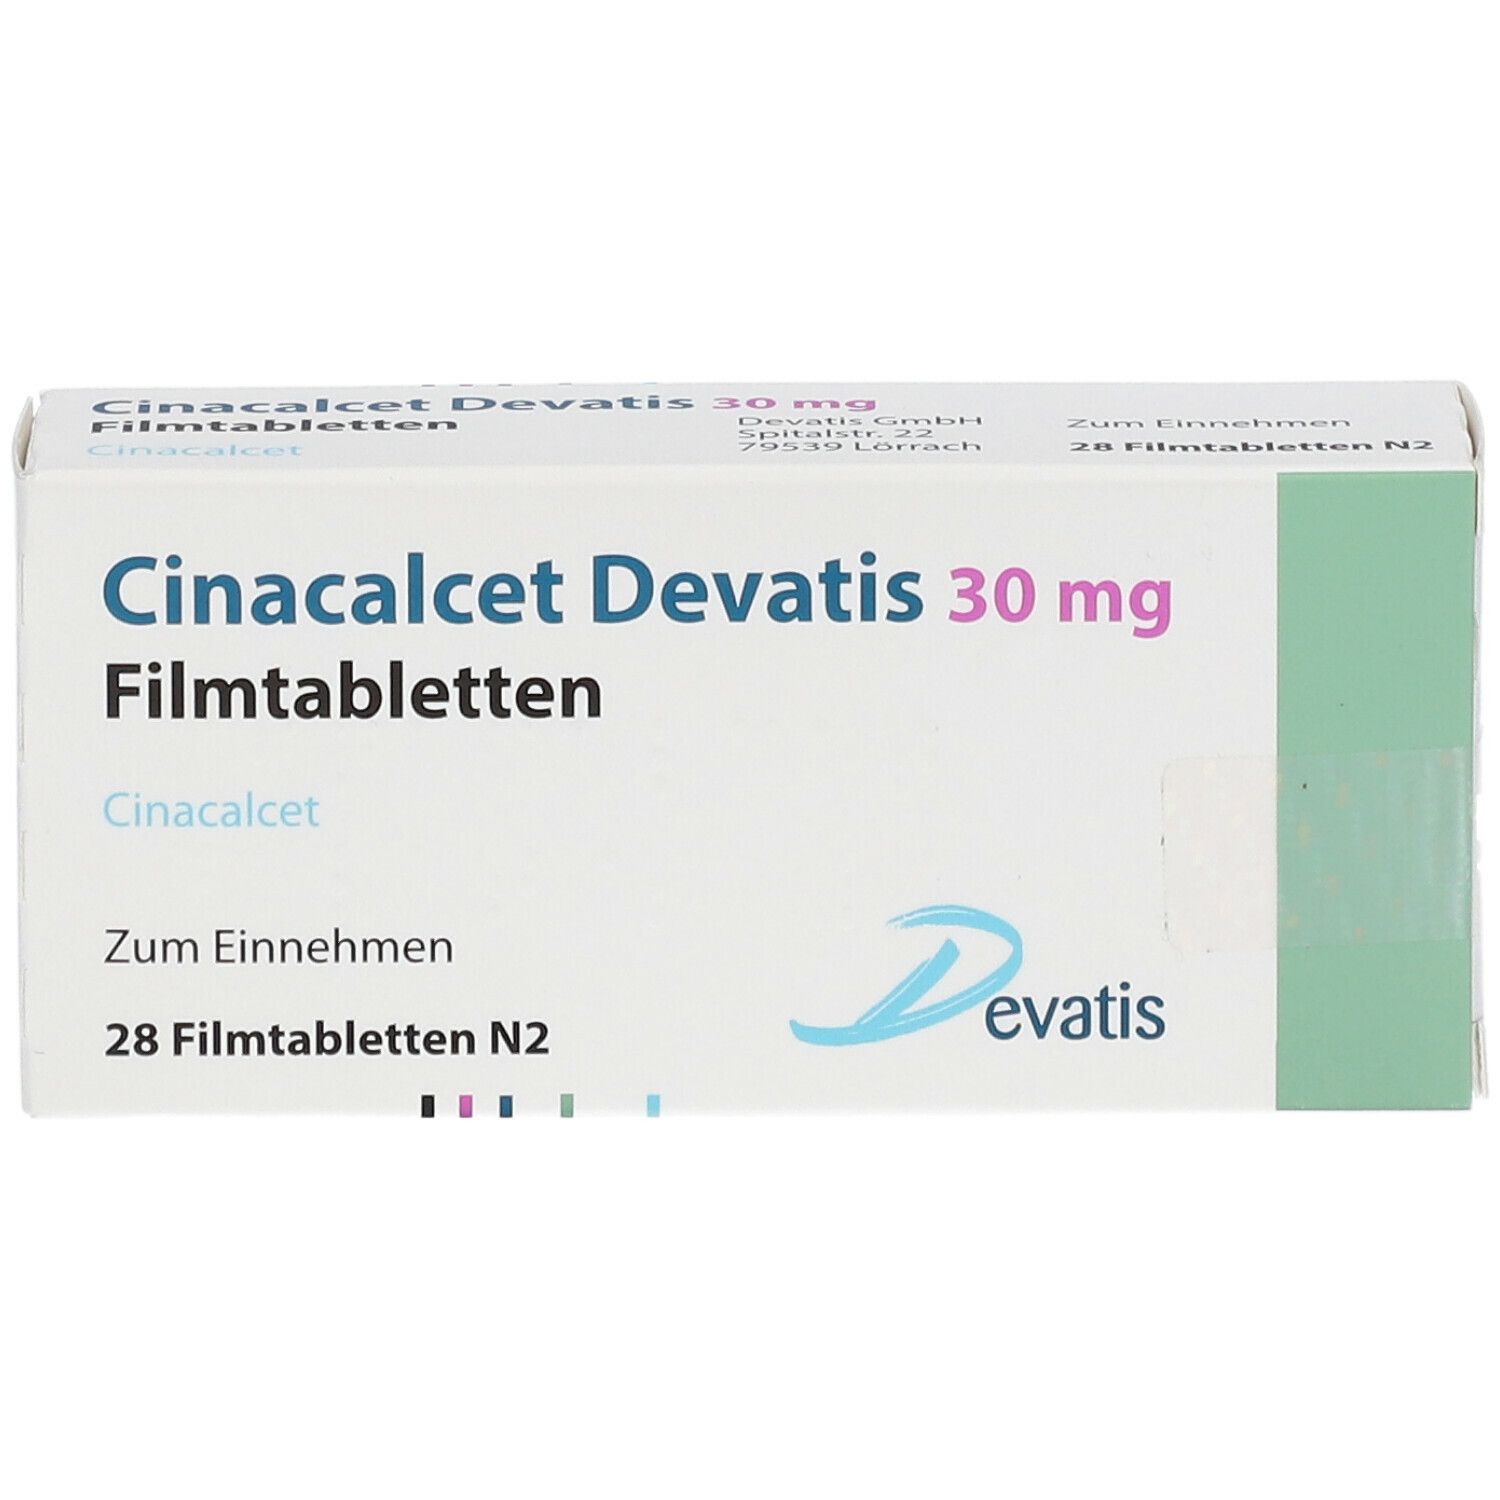 Cinacalcet Devatis 30 mg